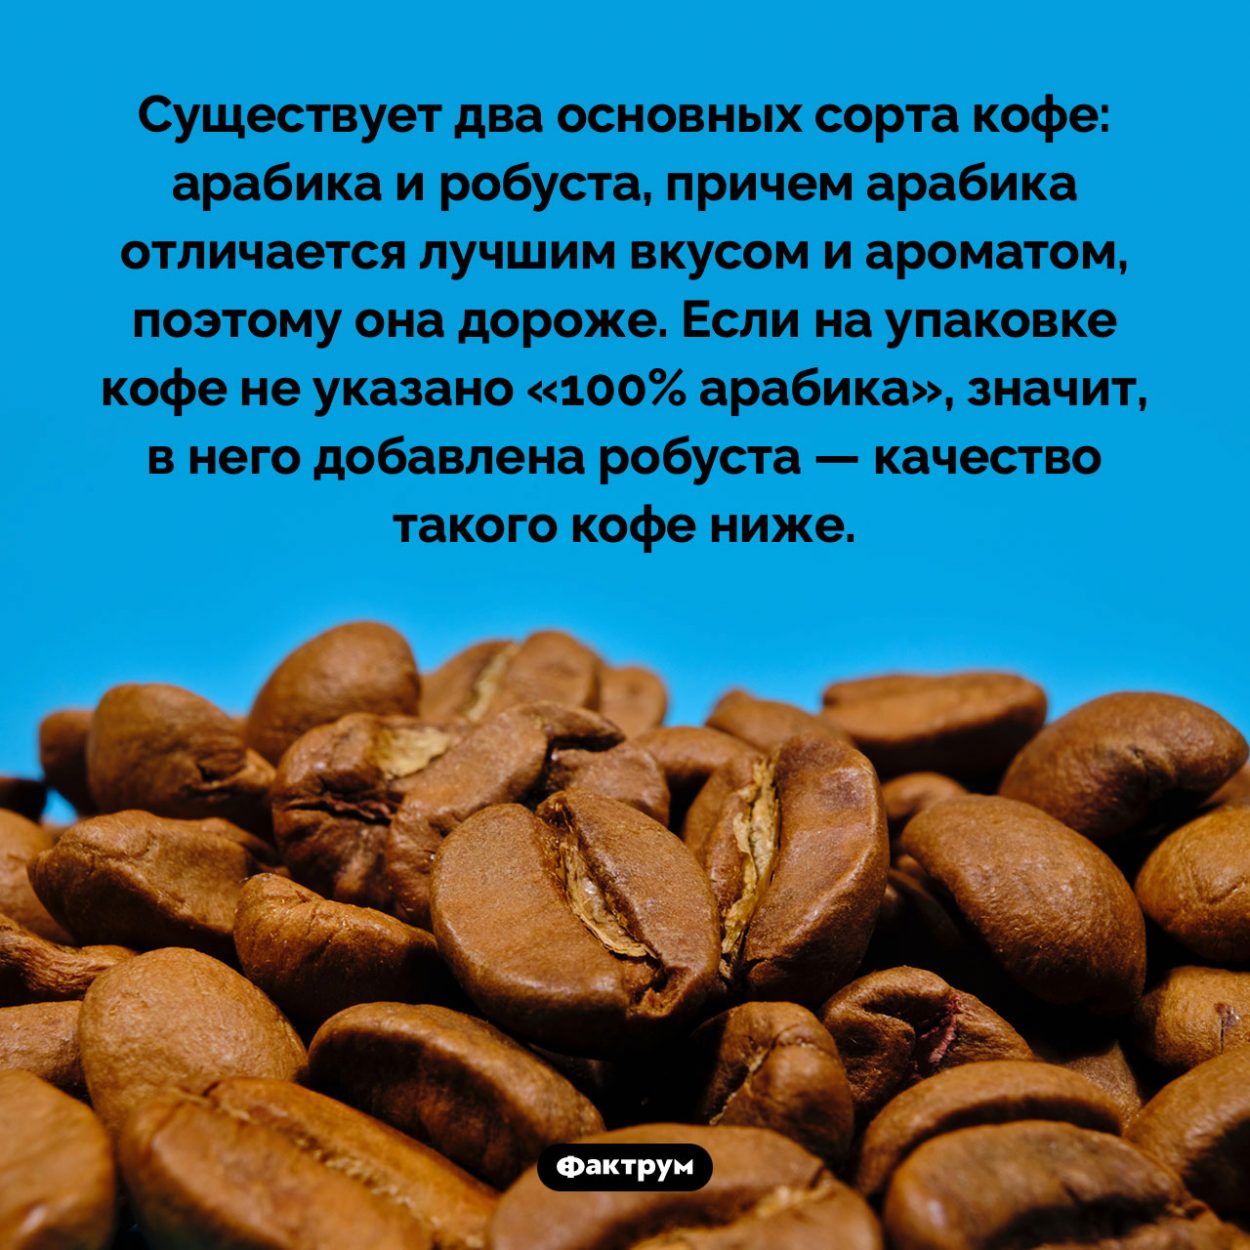 Арабика и робуста. Существует два основных сорта кофе: арабика и робуста, причем арабика отличается лучшим вкусом и ароматом, поэтому она дороже. Если на упаковке кофе не указано «100% арабика», значит, в него добавлена робуста — качество такого кофе ниже.